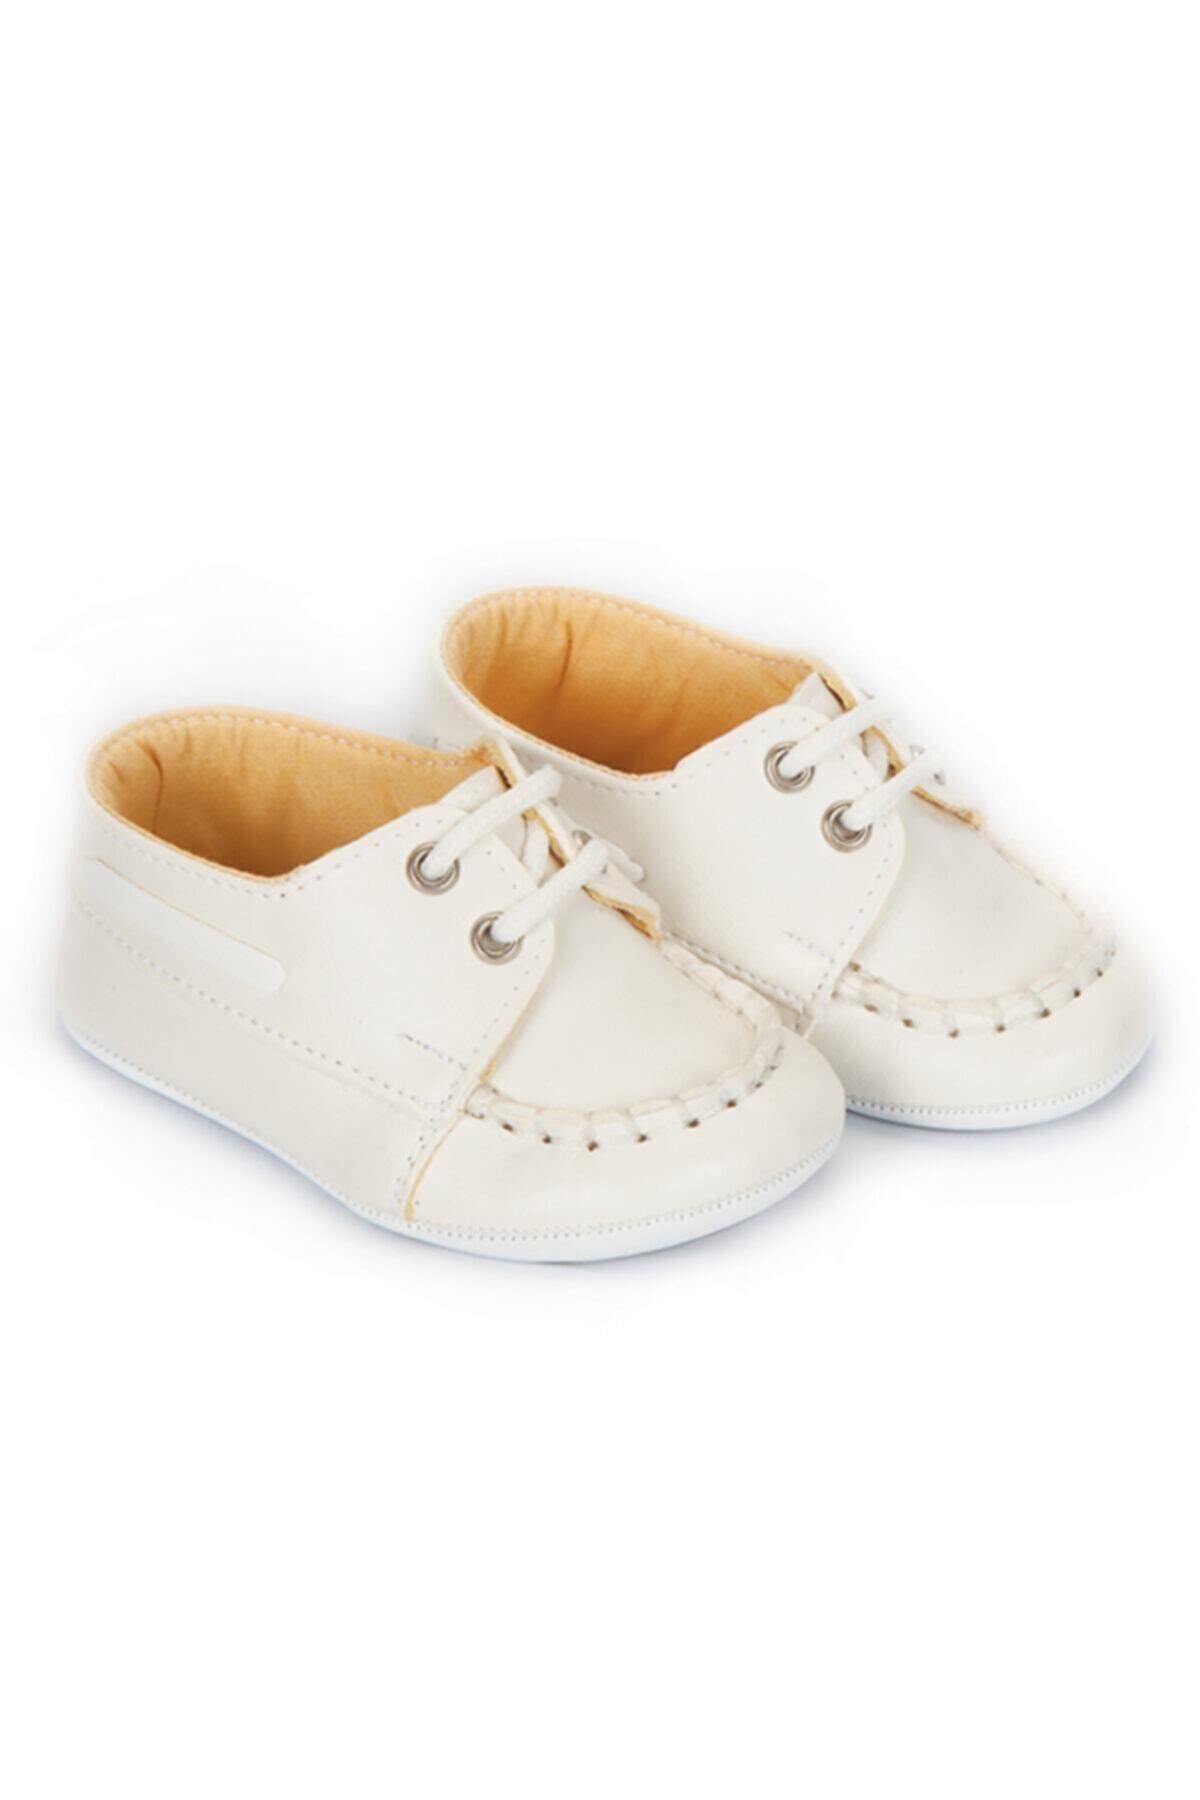 Papulin Unisex Bebek Beyaz Bağcıklı Unisex Ayakkabı - Patik - 3160